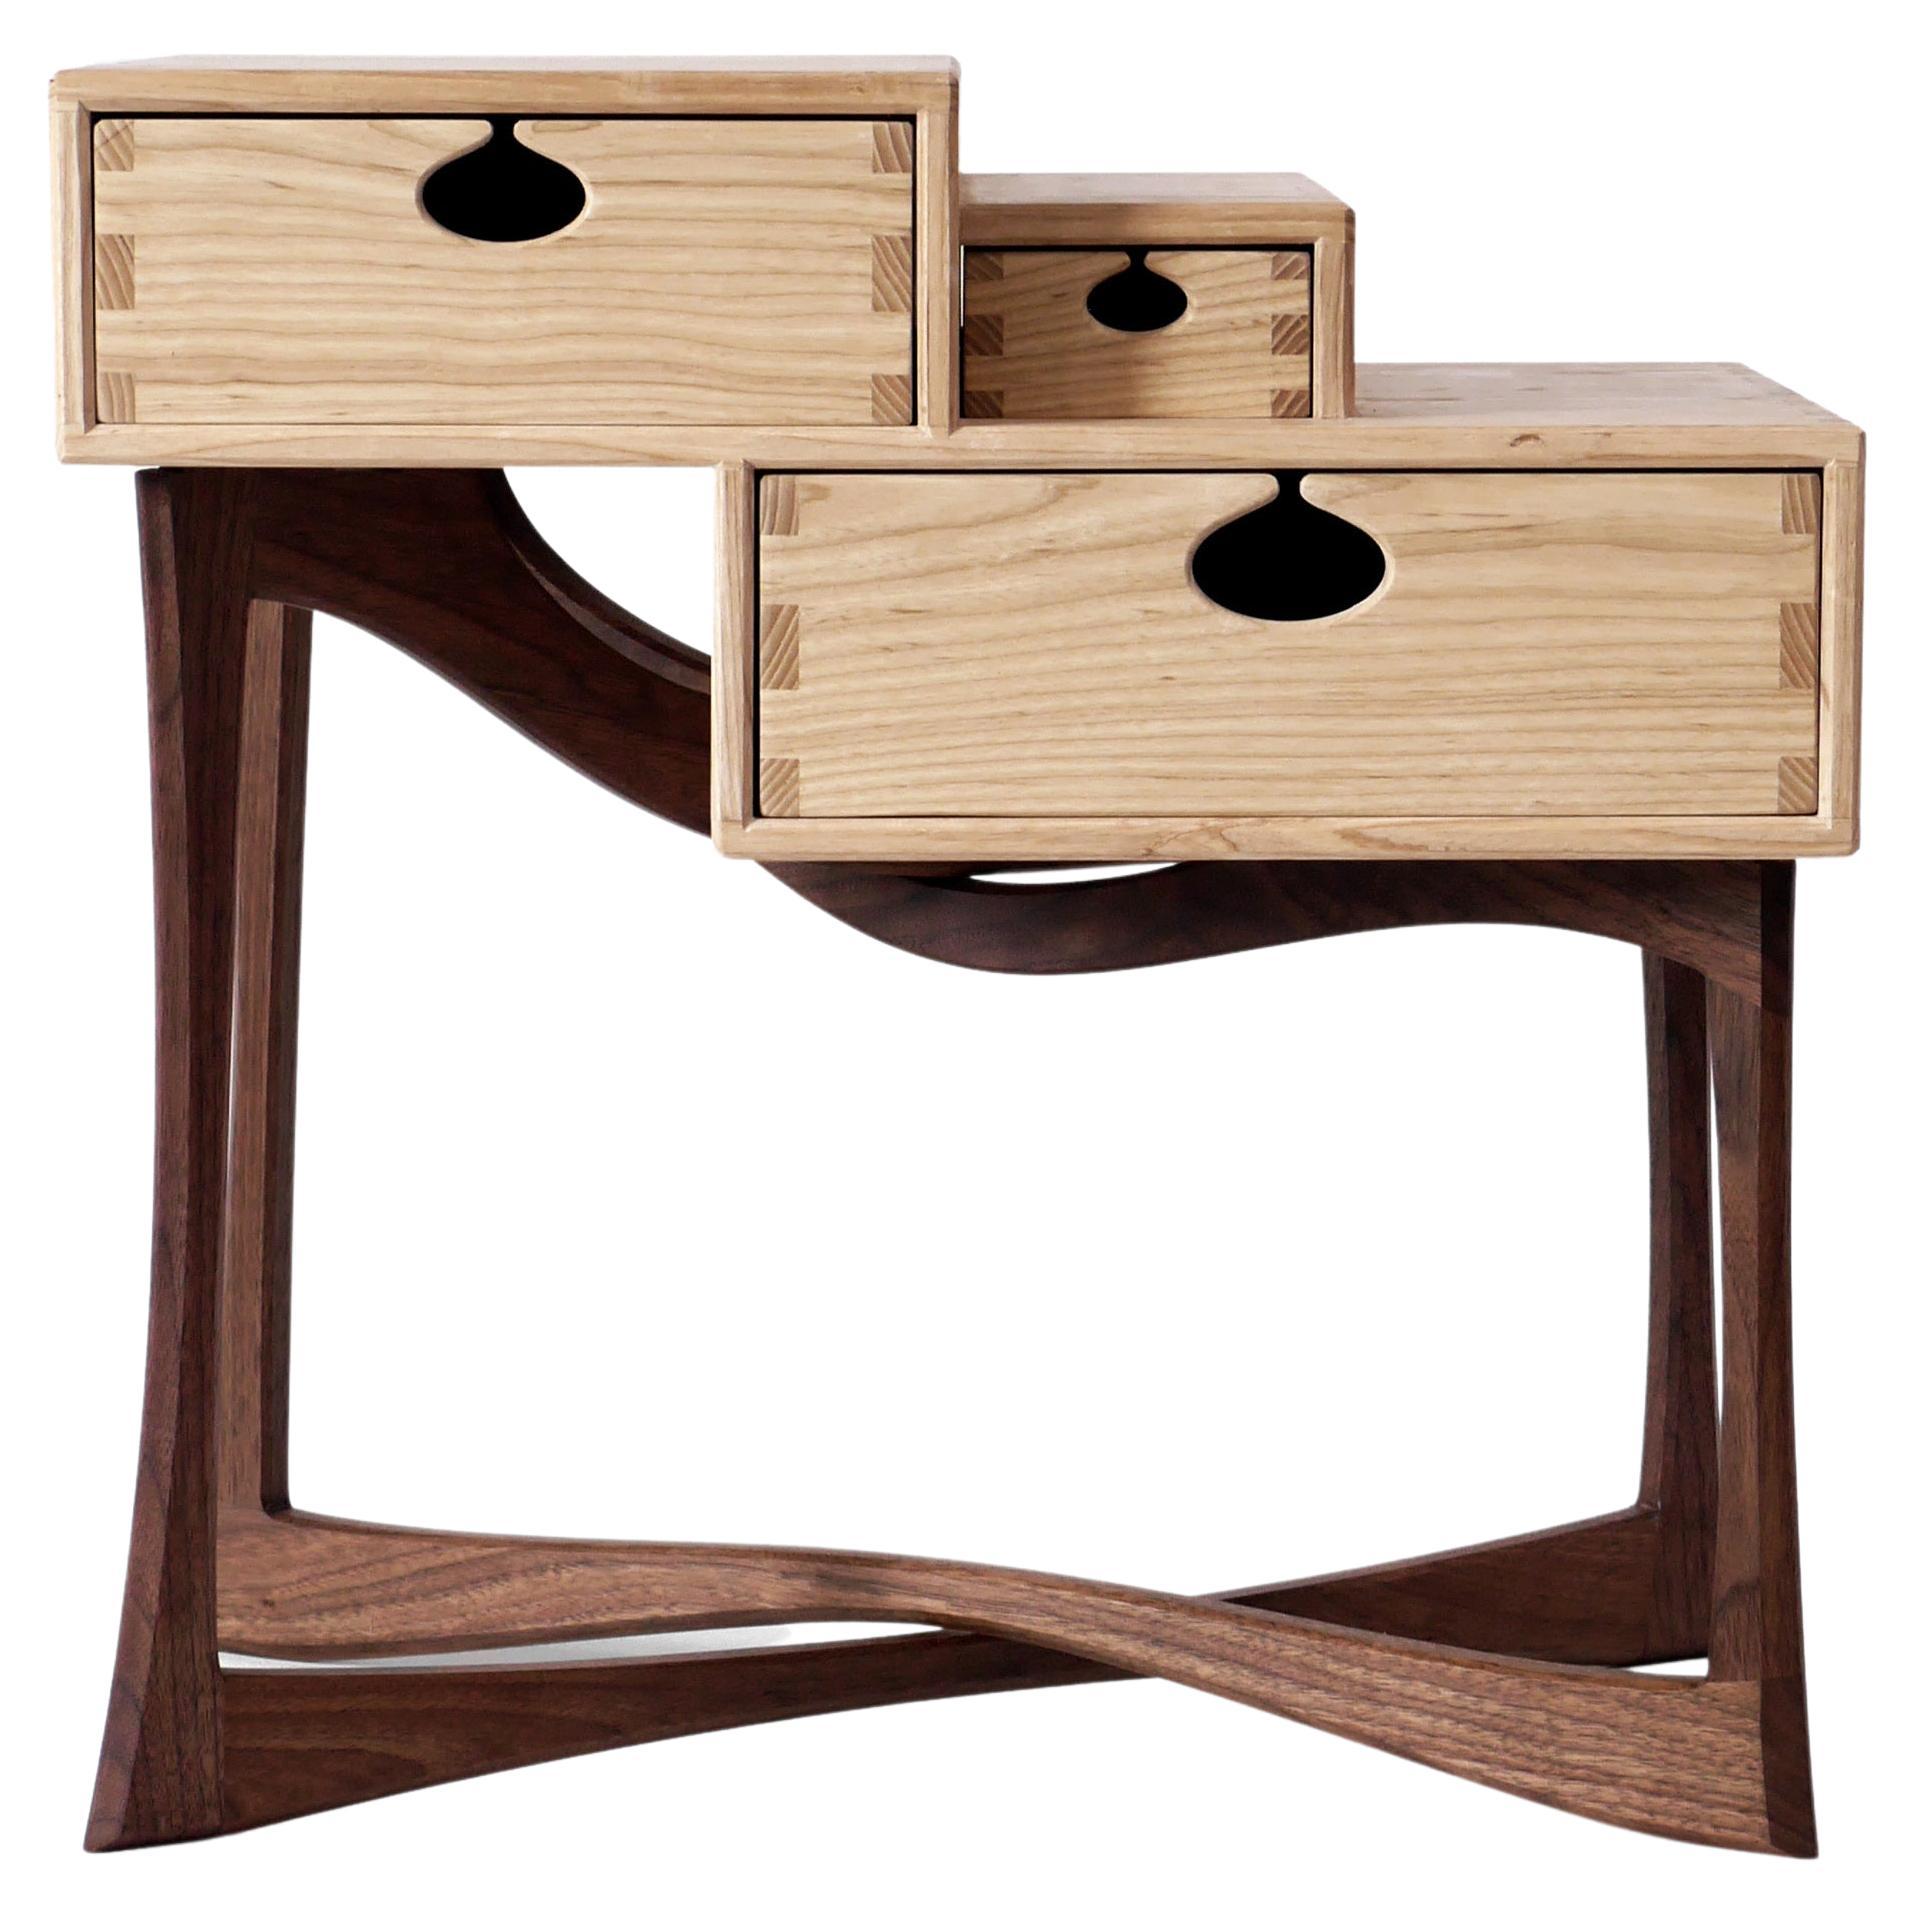 Coriolis Beistelltisch aus Nussbaum und Esche, moderner Nachttisch mit drei Schubladen